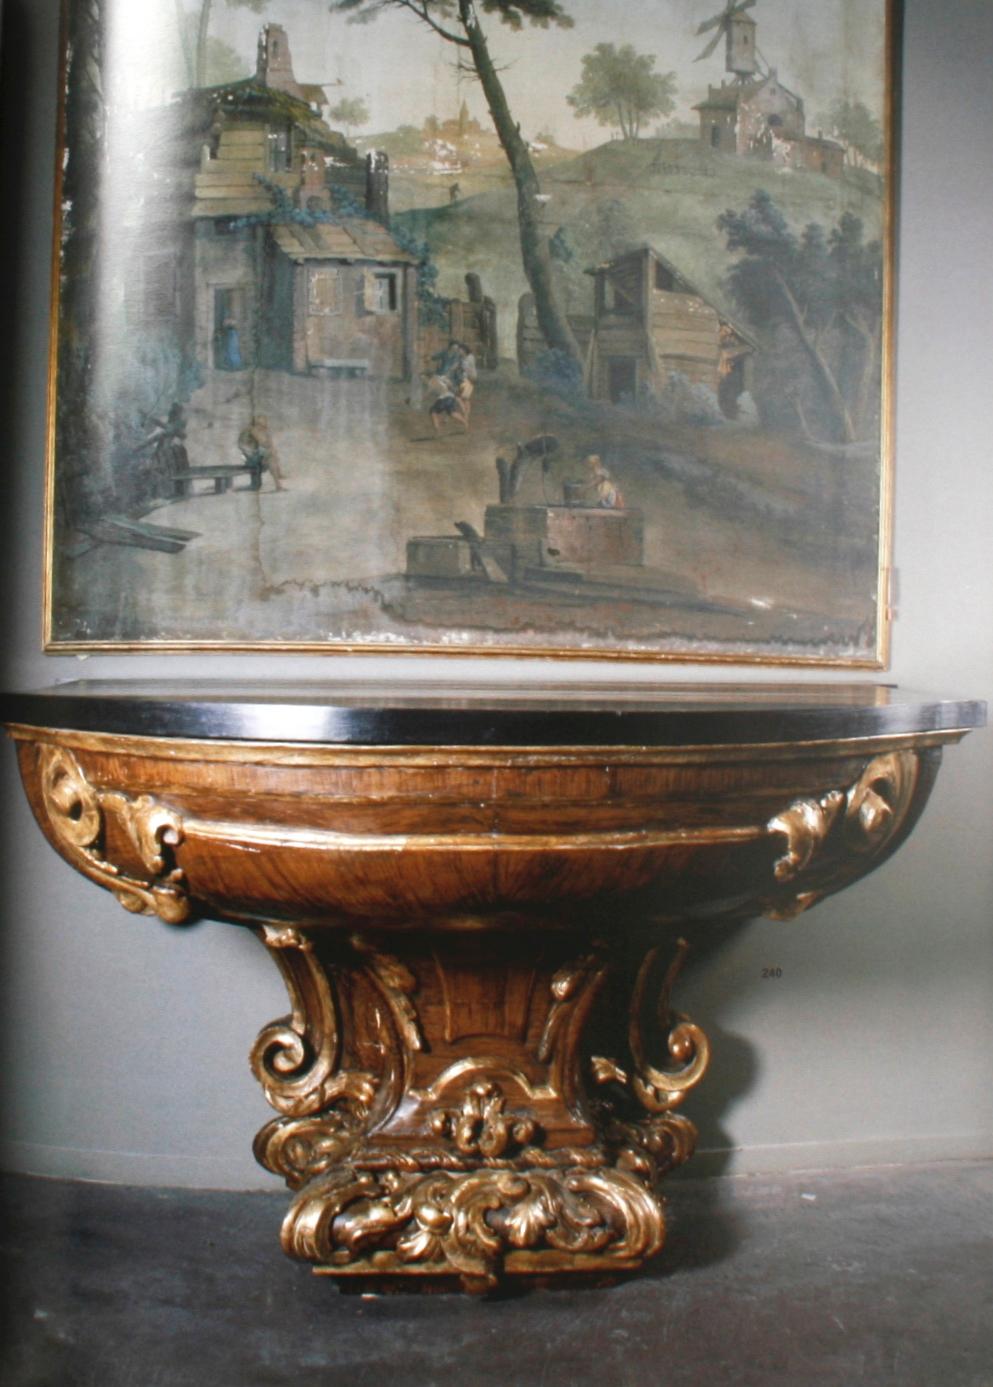 Sotheby's Paul De Grande Restoration Project 5/9/04, Bruge For Sale 7